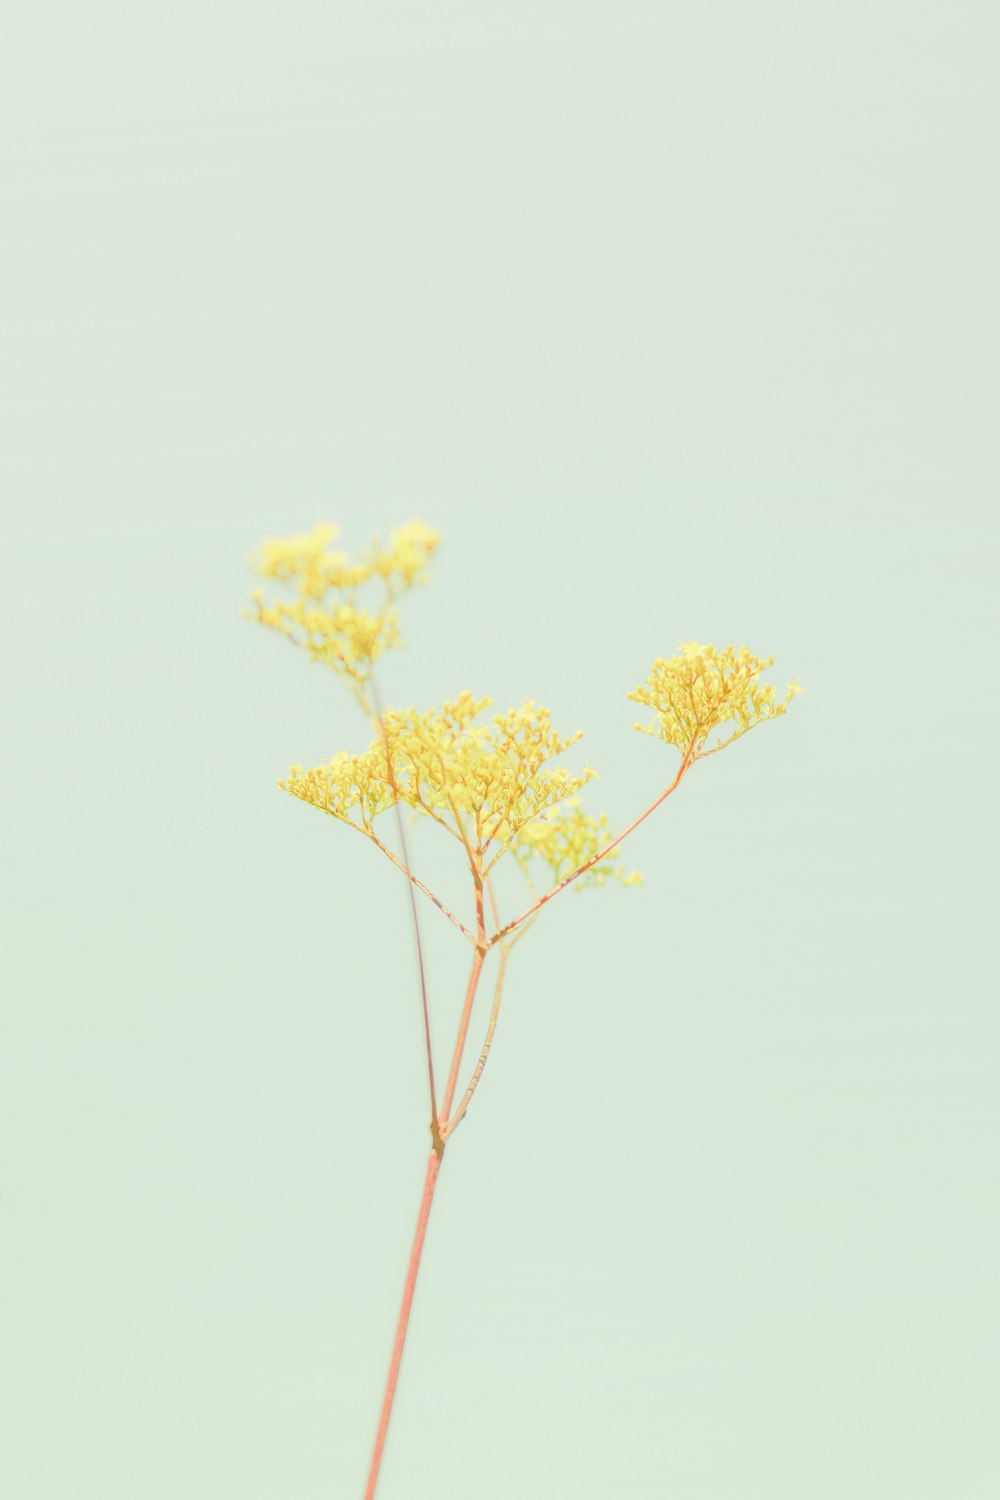 árbol de hoja amarilla durante el día